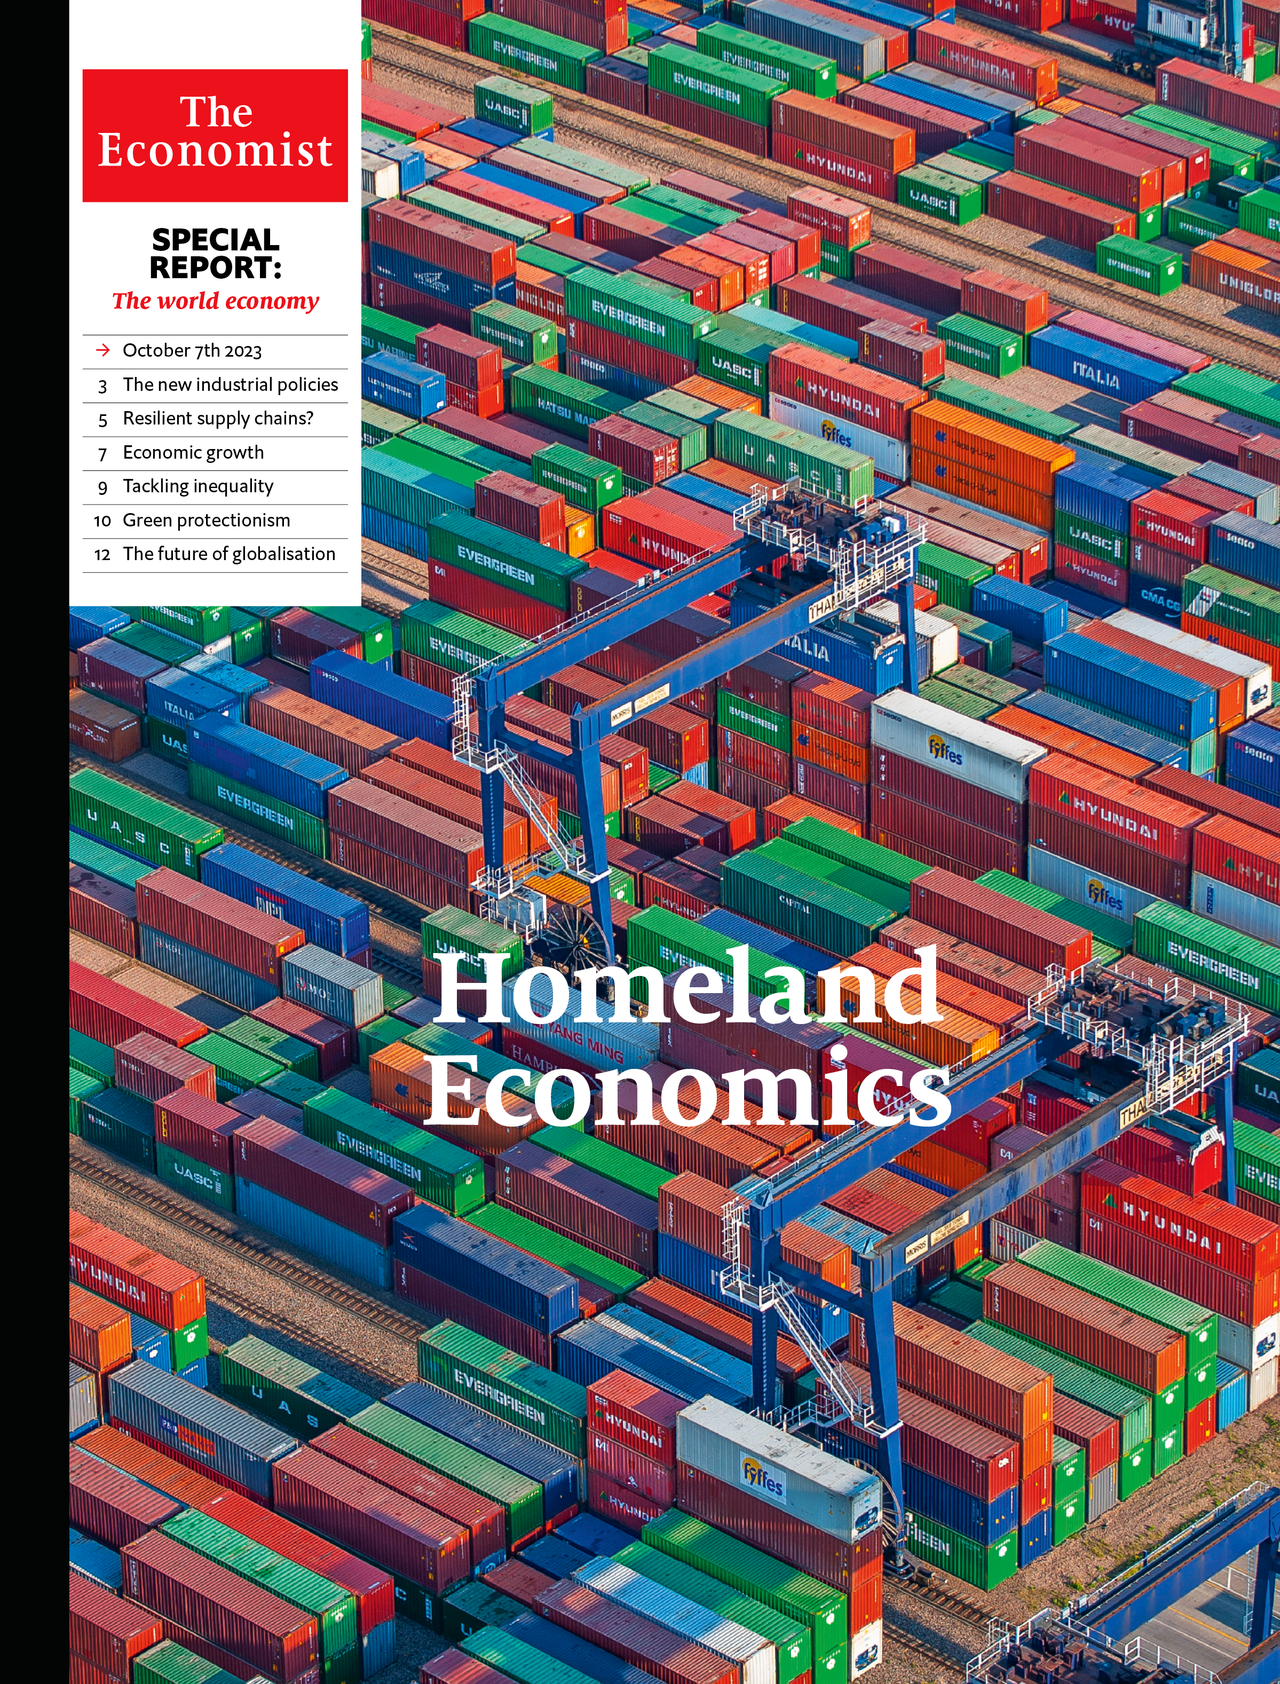 Special reports: Homeland Economics